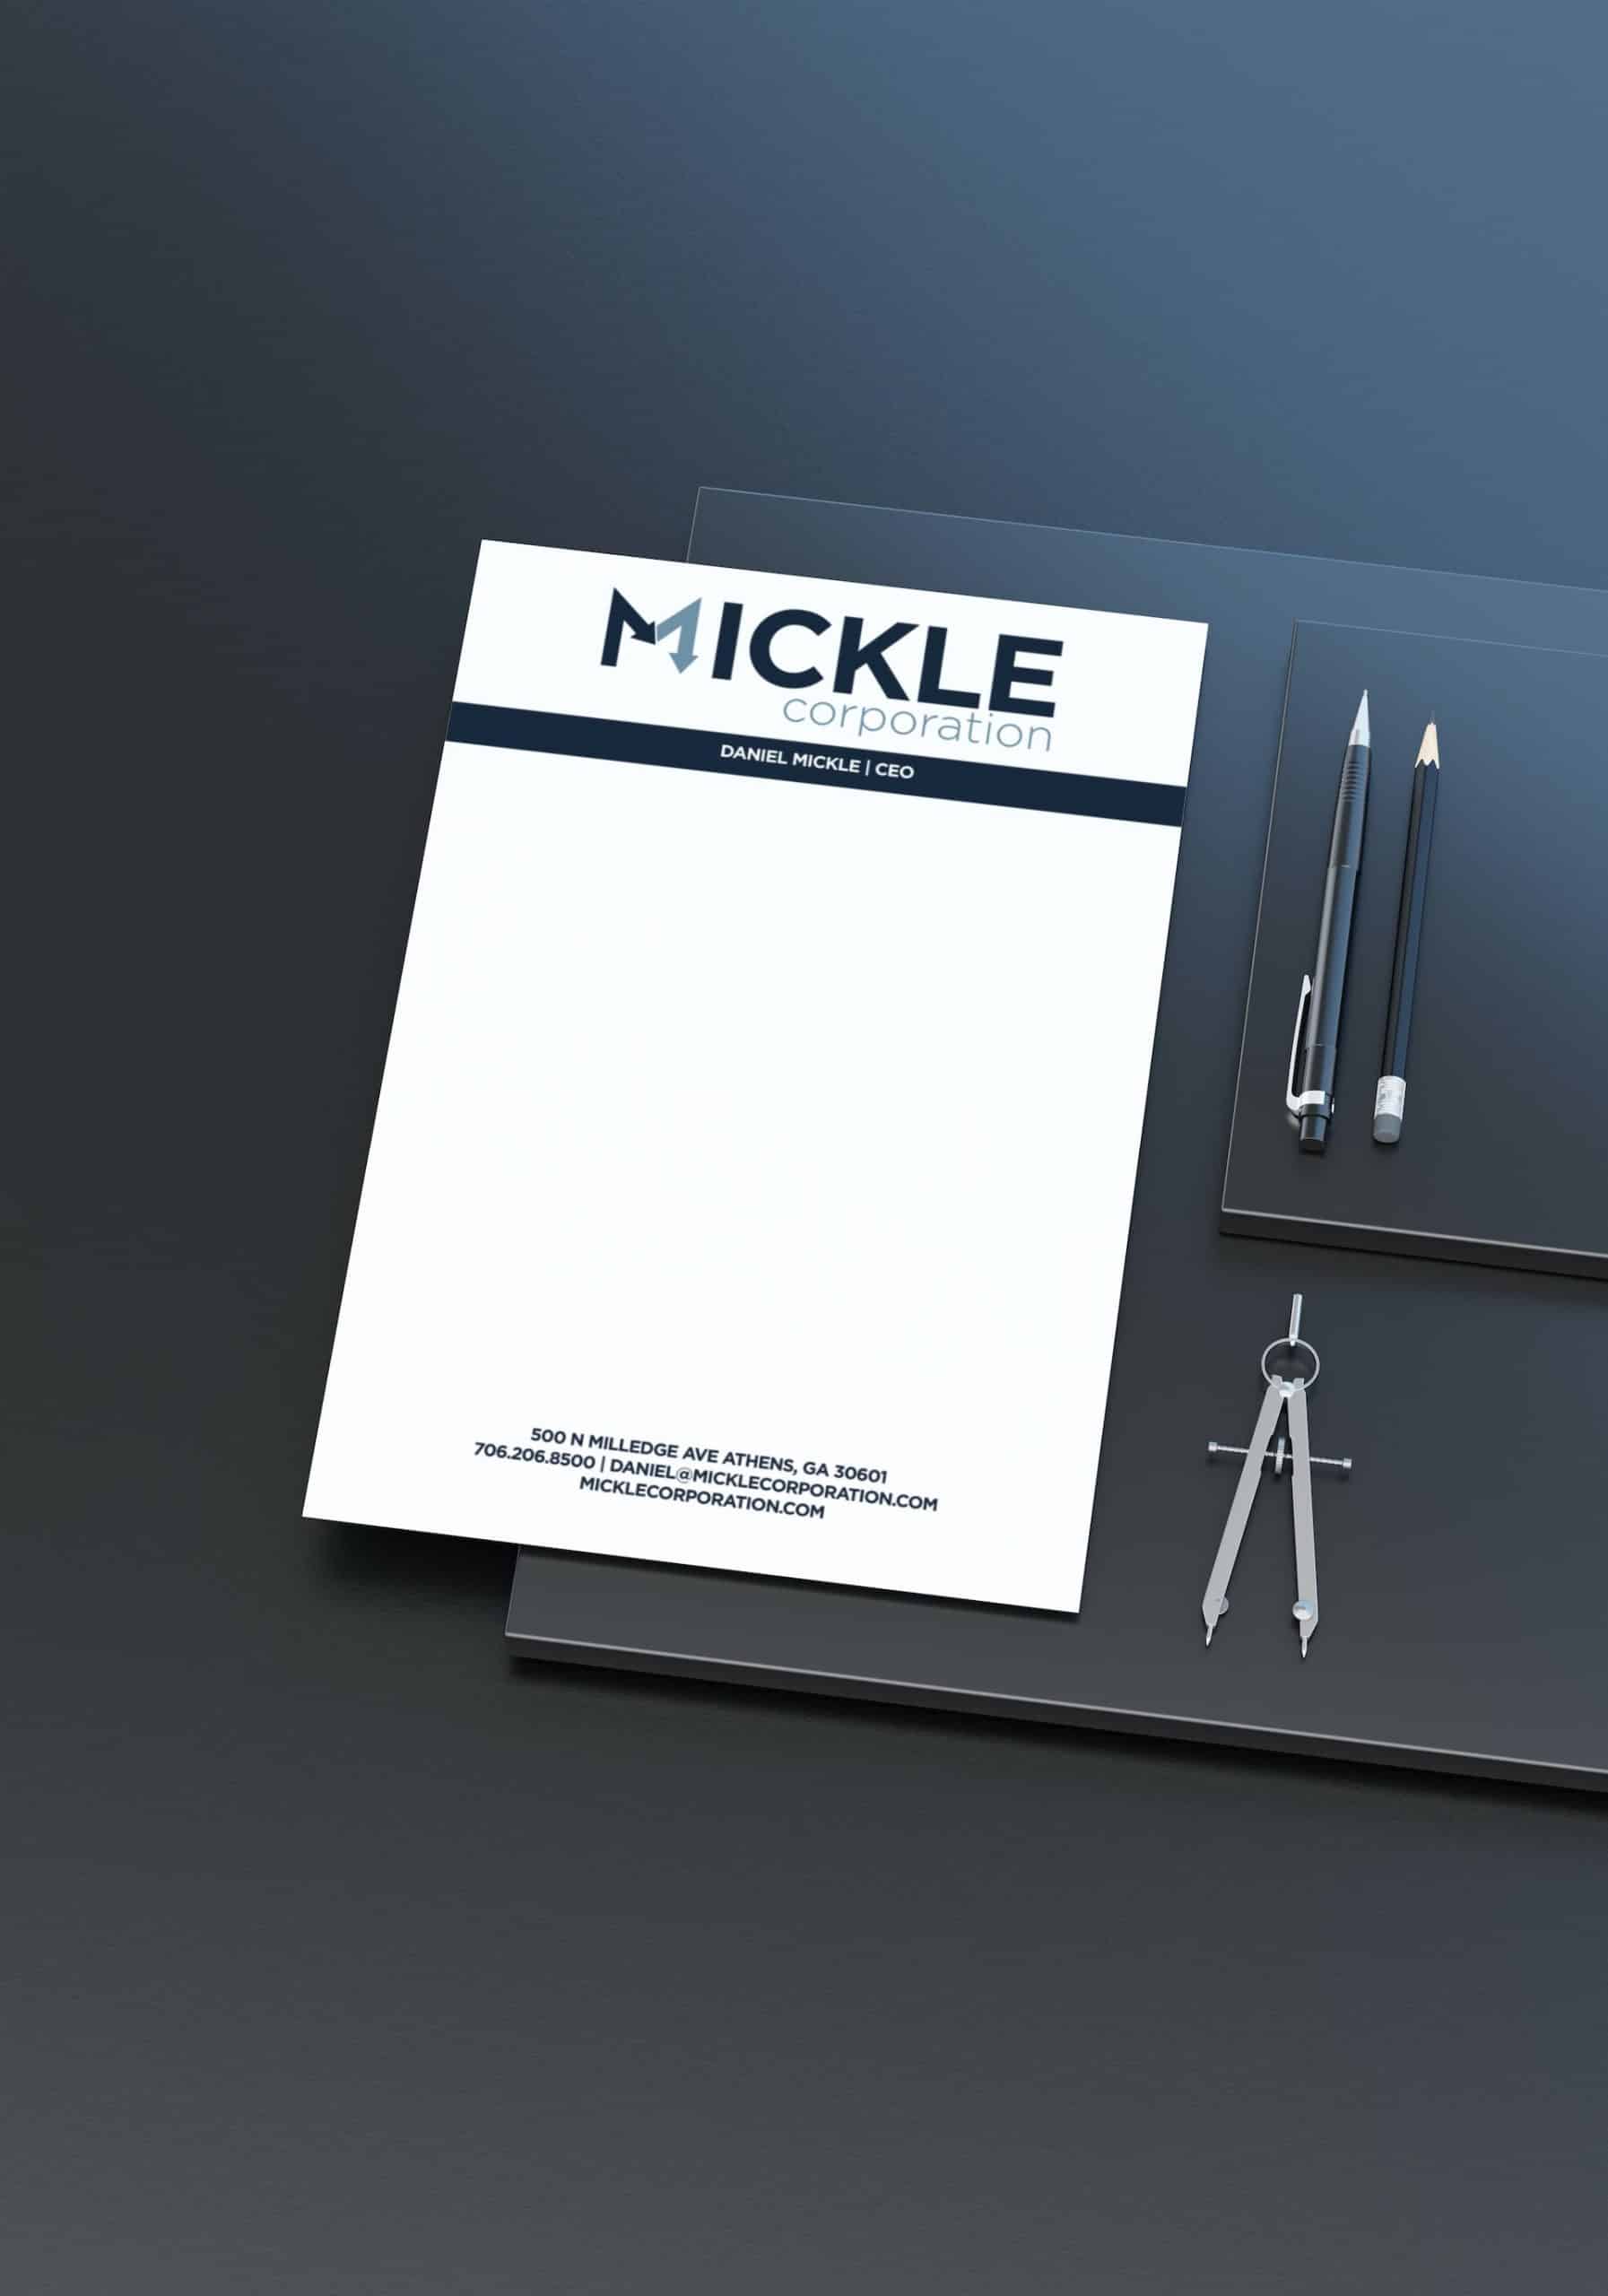 Mickle Corporation letterhead design